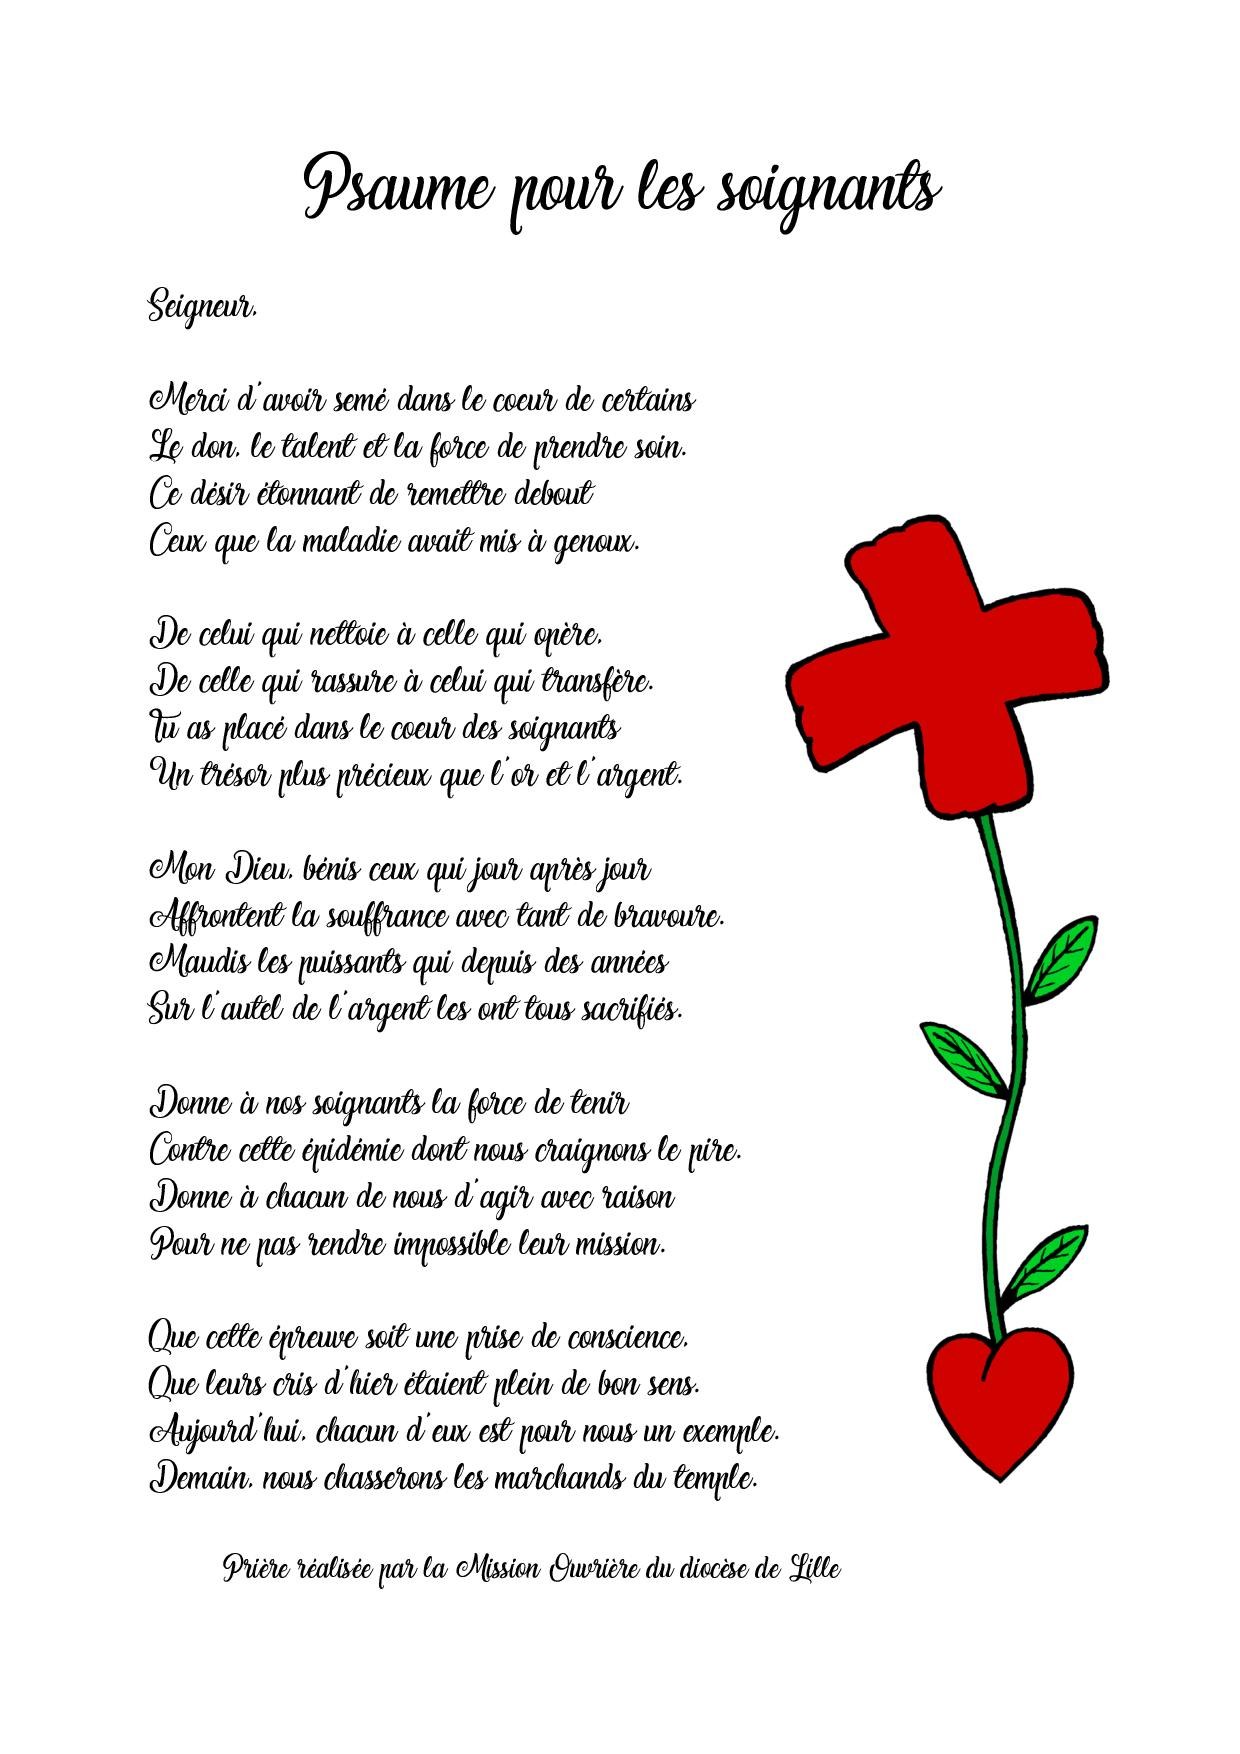 Psaume pour les soignants VF-page-001